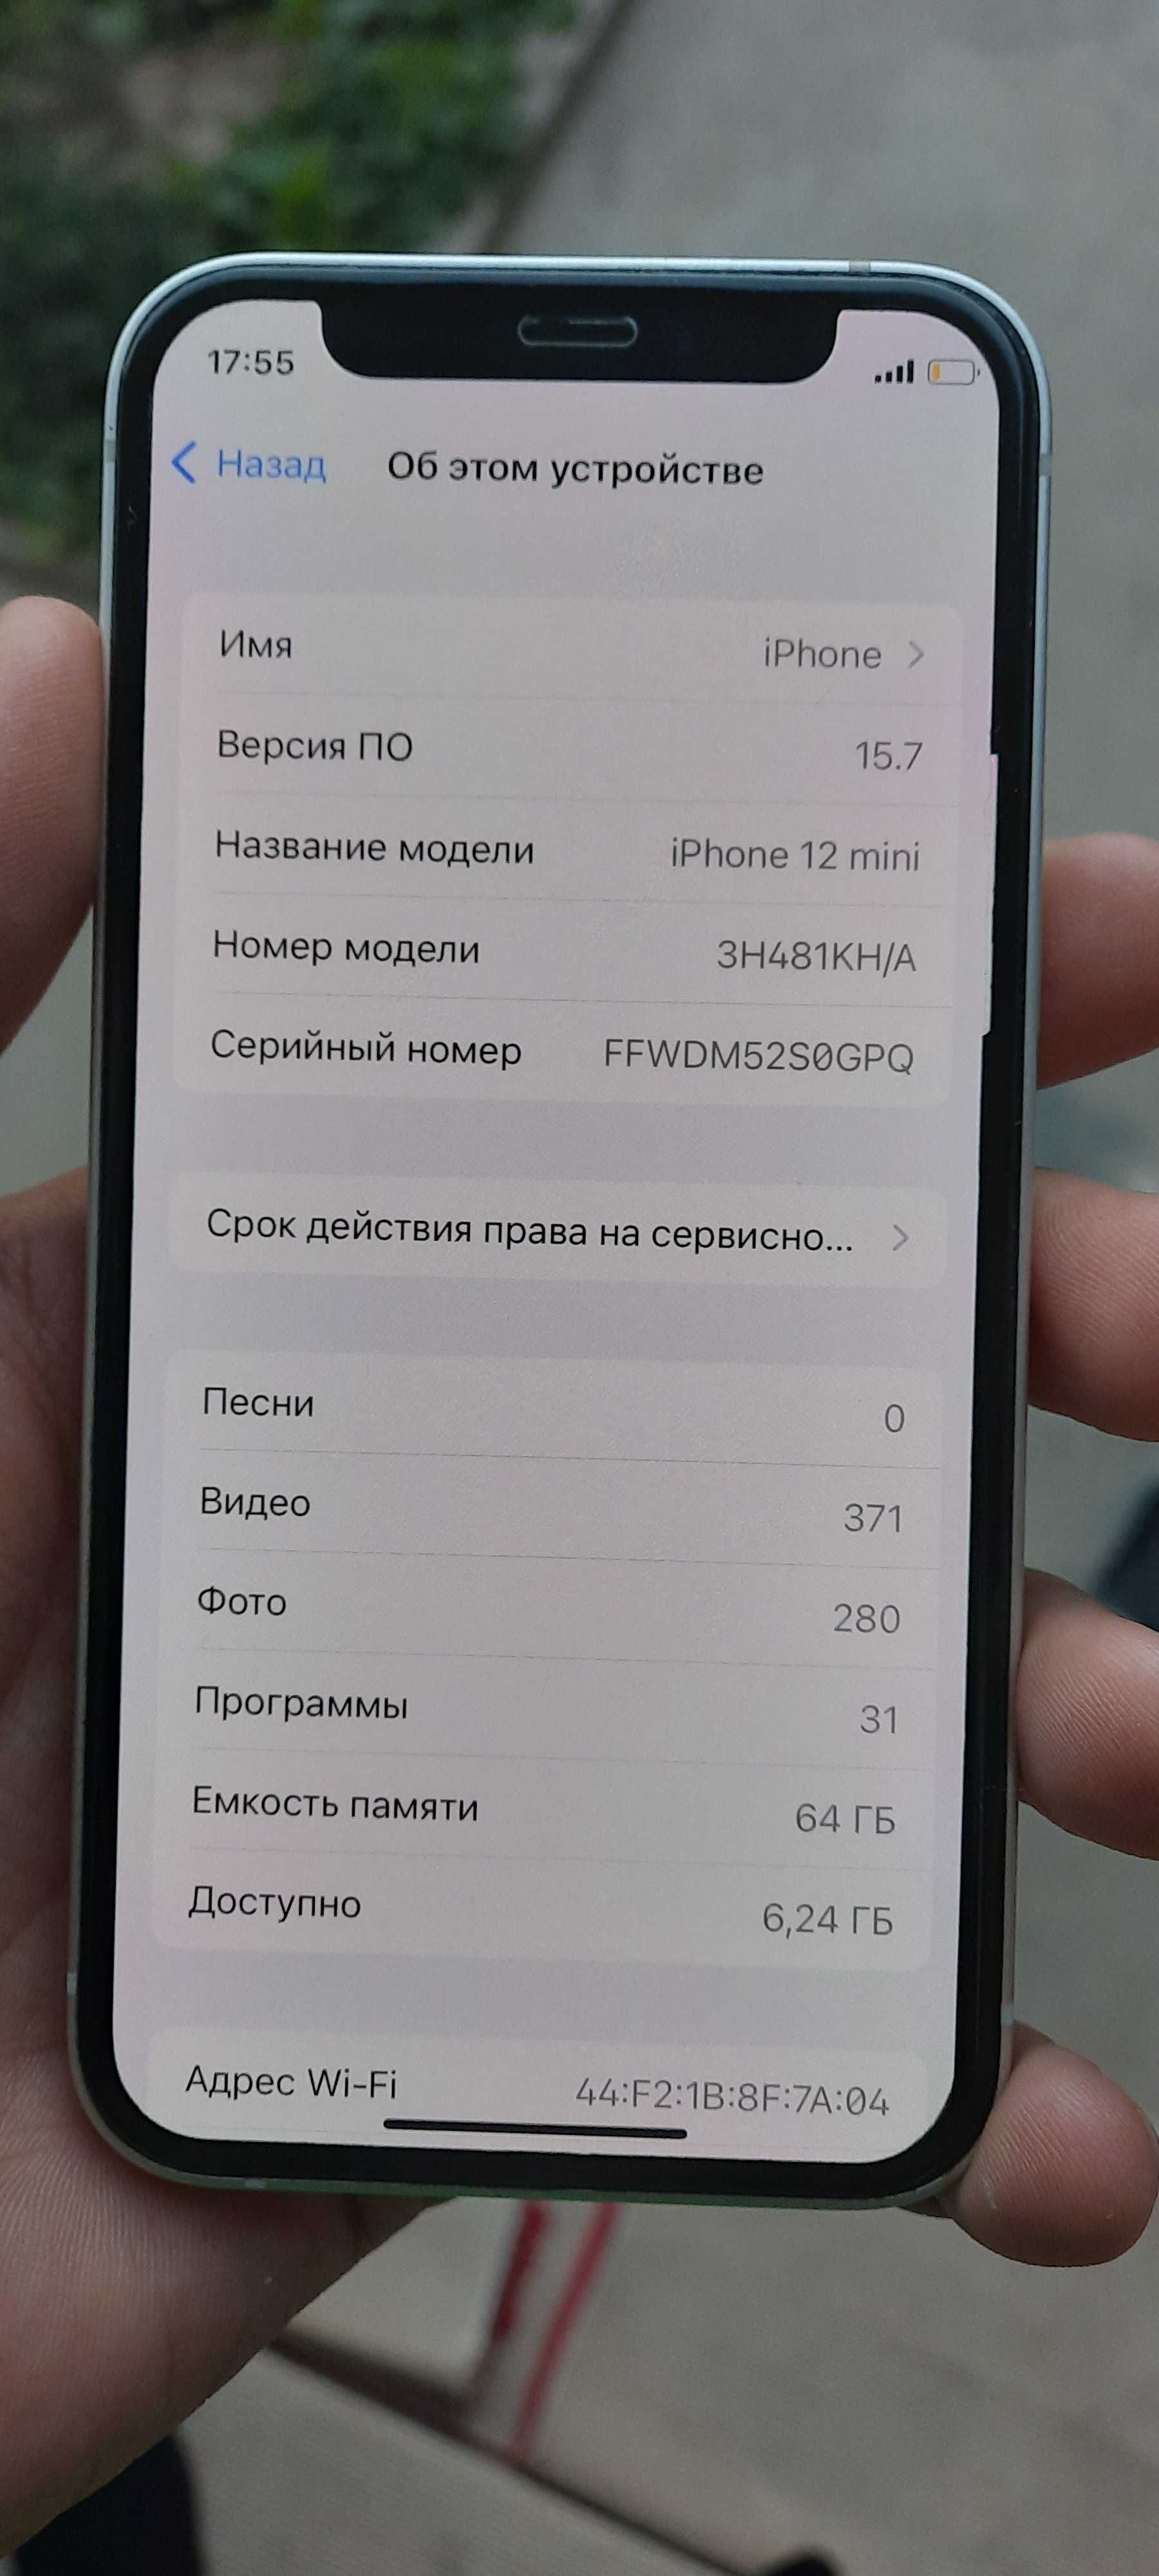 iPhone 12 mini 64 GB KH/A